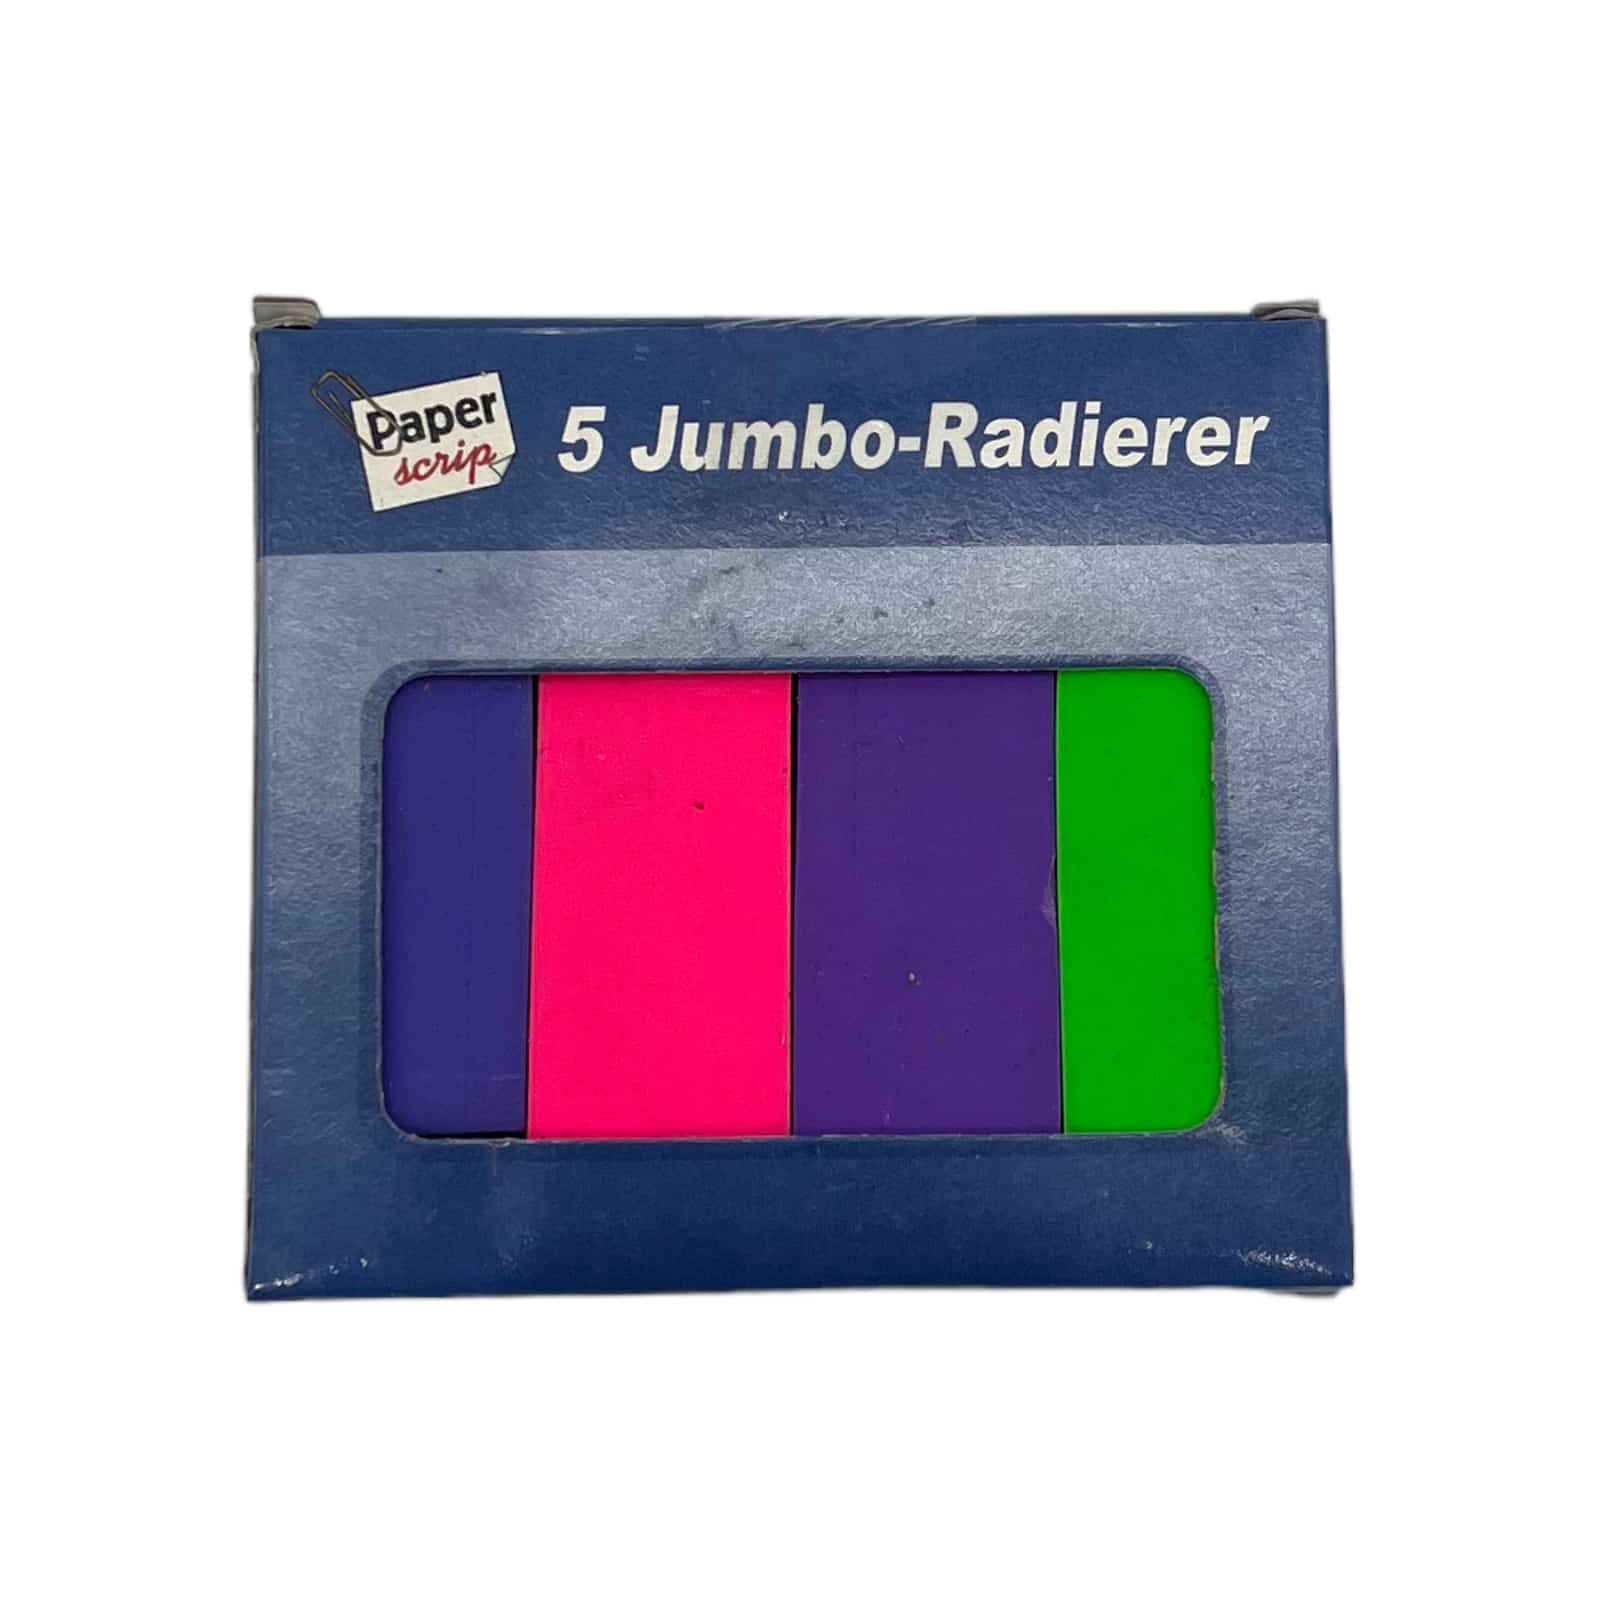 Jumbo-Radierer 5er